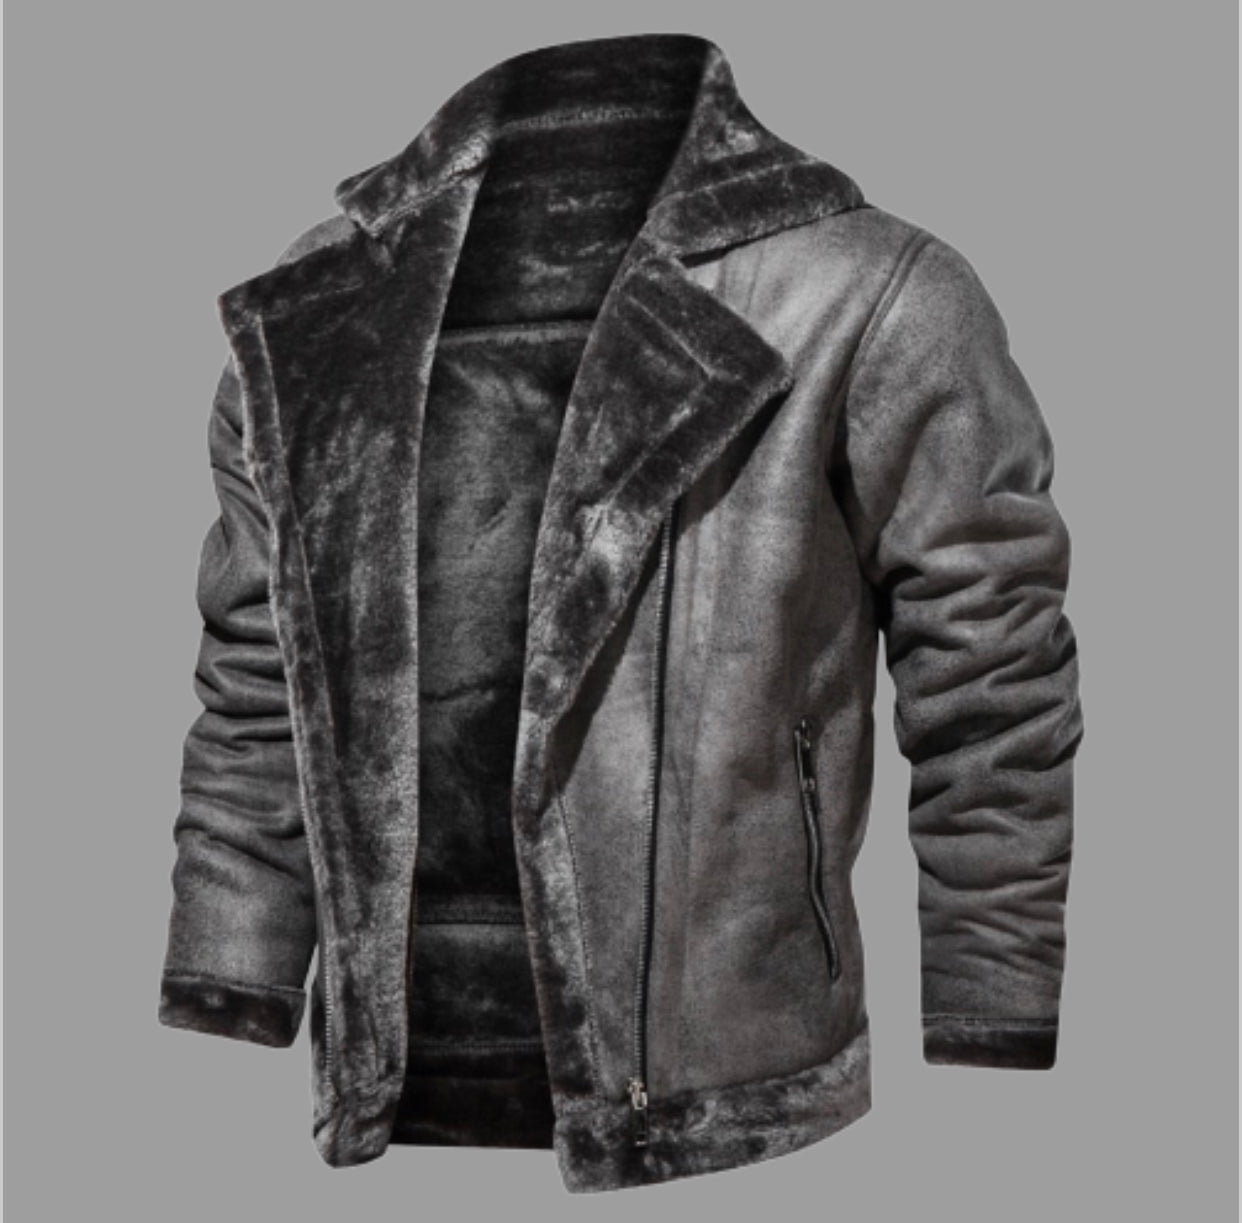 Romeo Motorcycle Leather Jacket